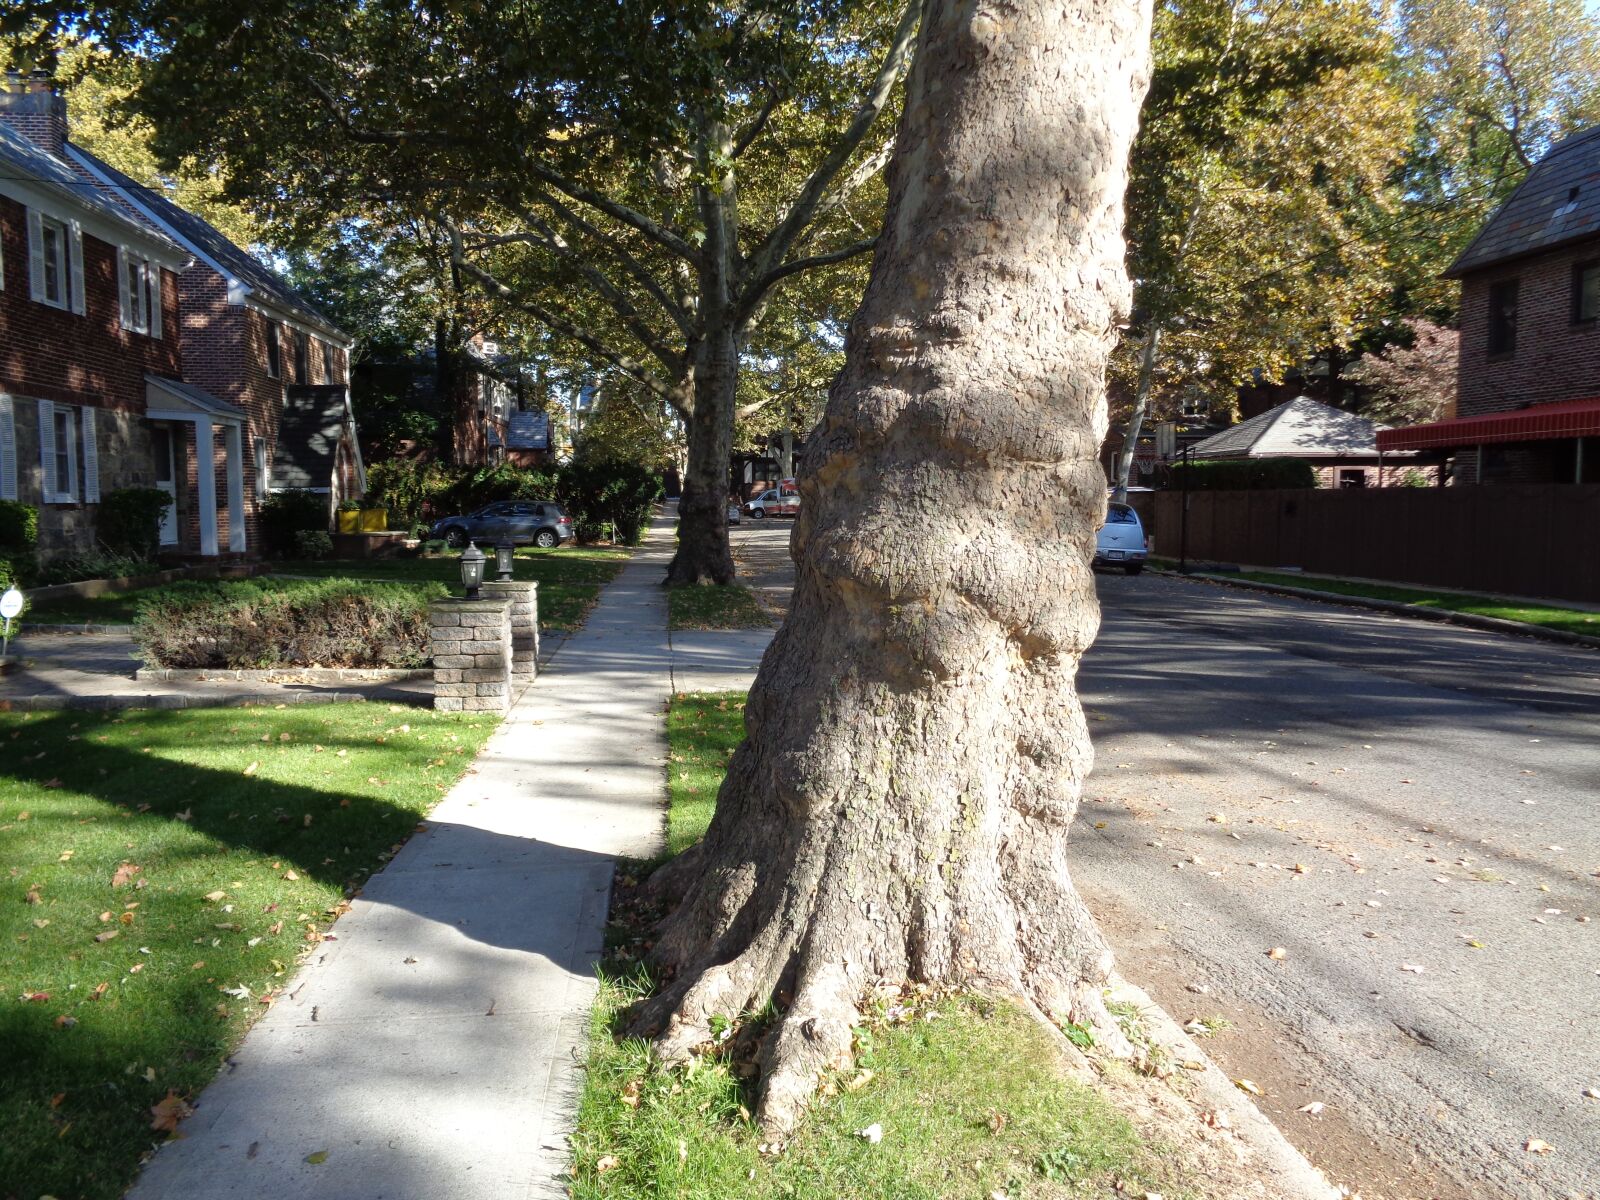 Sony Cyber-shot DSC-W830 sample photo. Tree trunk, street, sidewalk photography